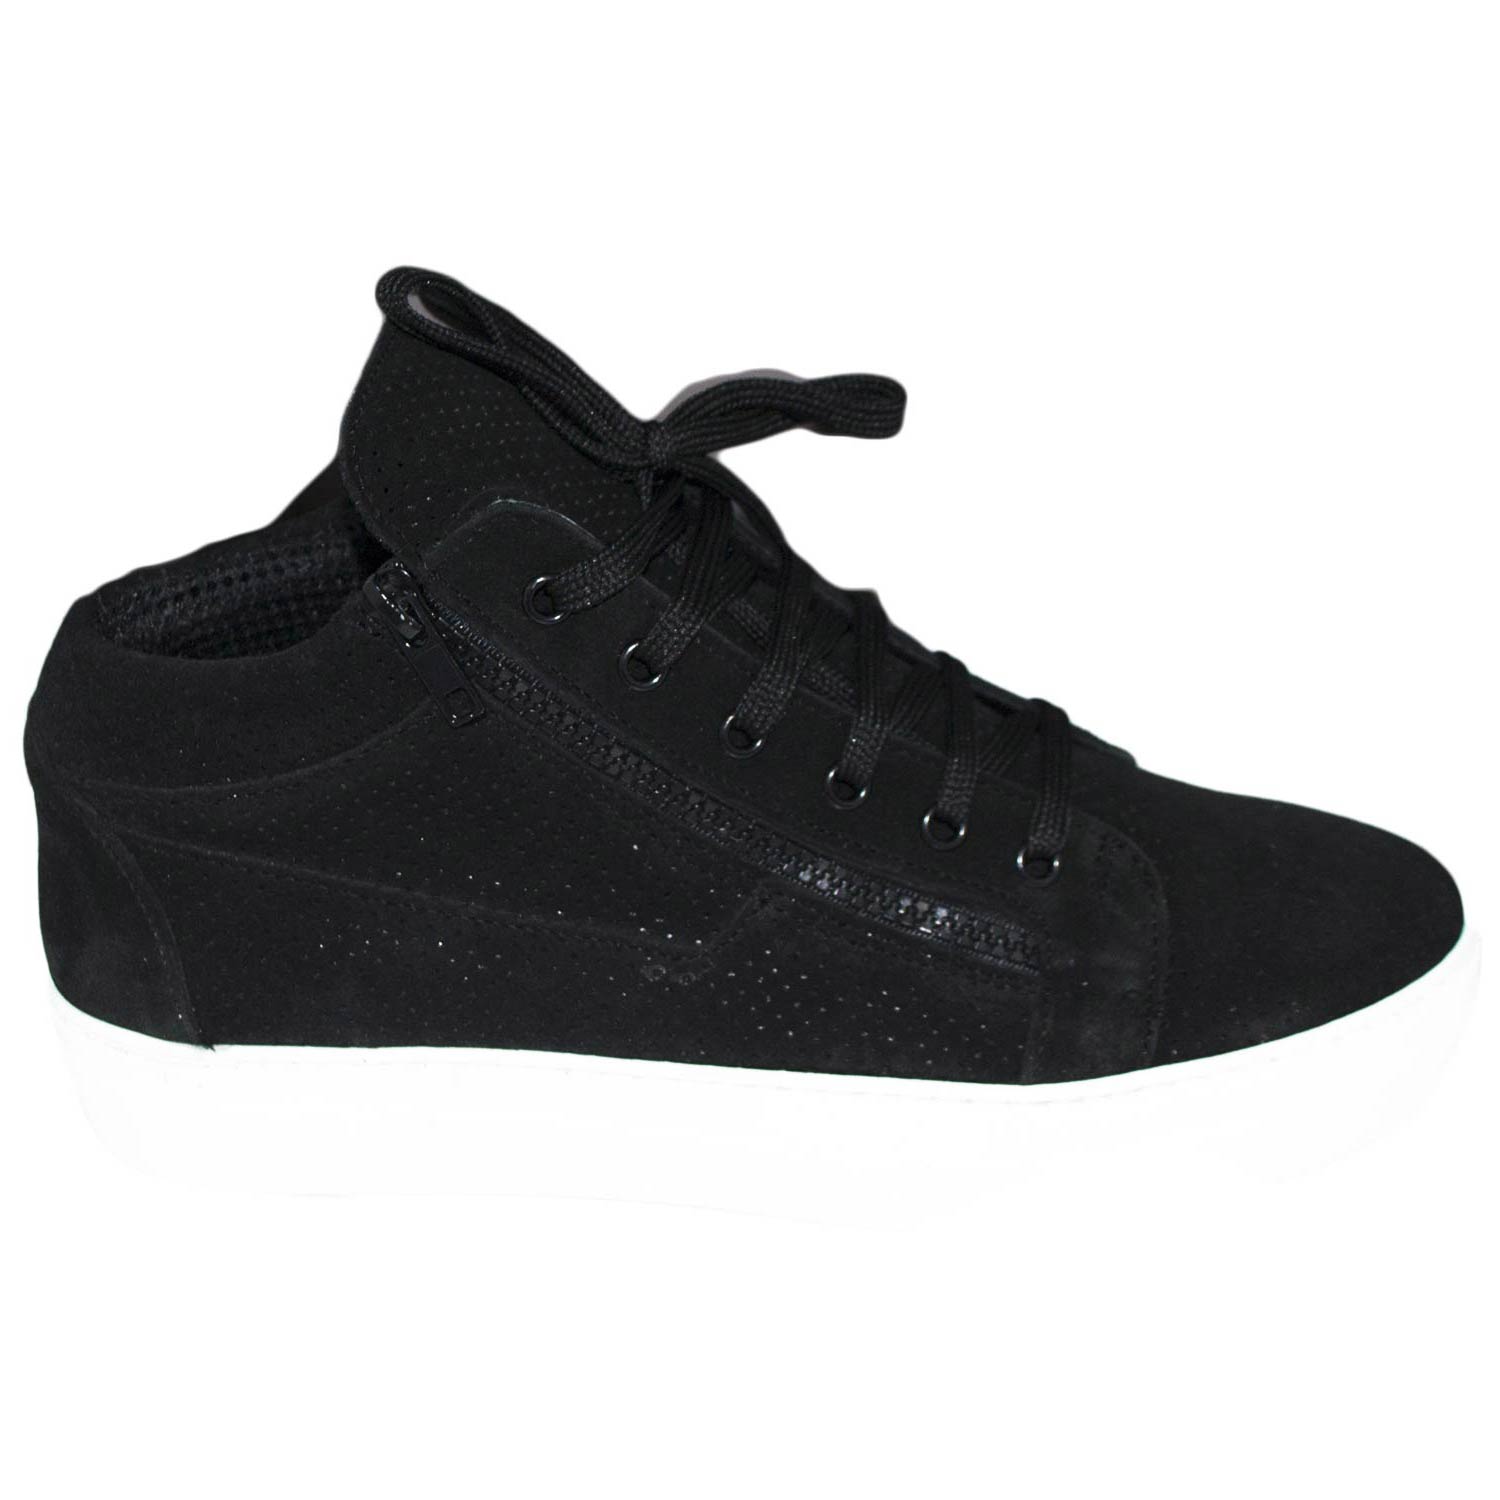 Sneakers alta uomo fondo doppio bianco antiscivolo due zip vera pelle camoscio microforato di colore nero  lacci art 109895